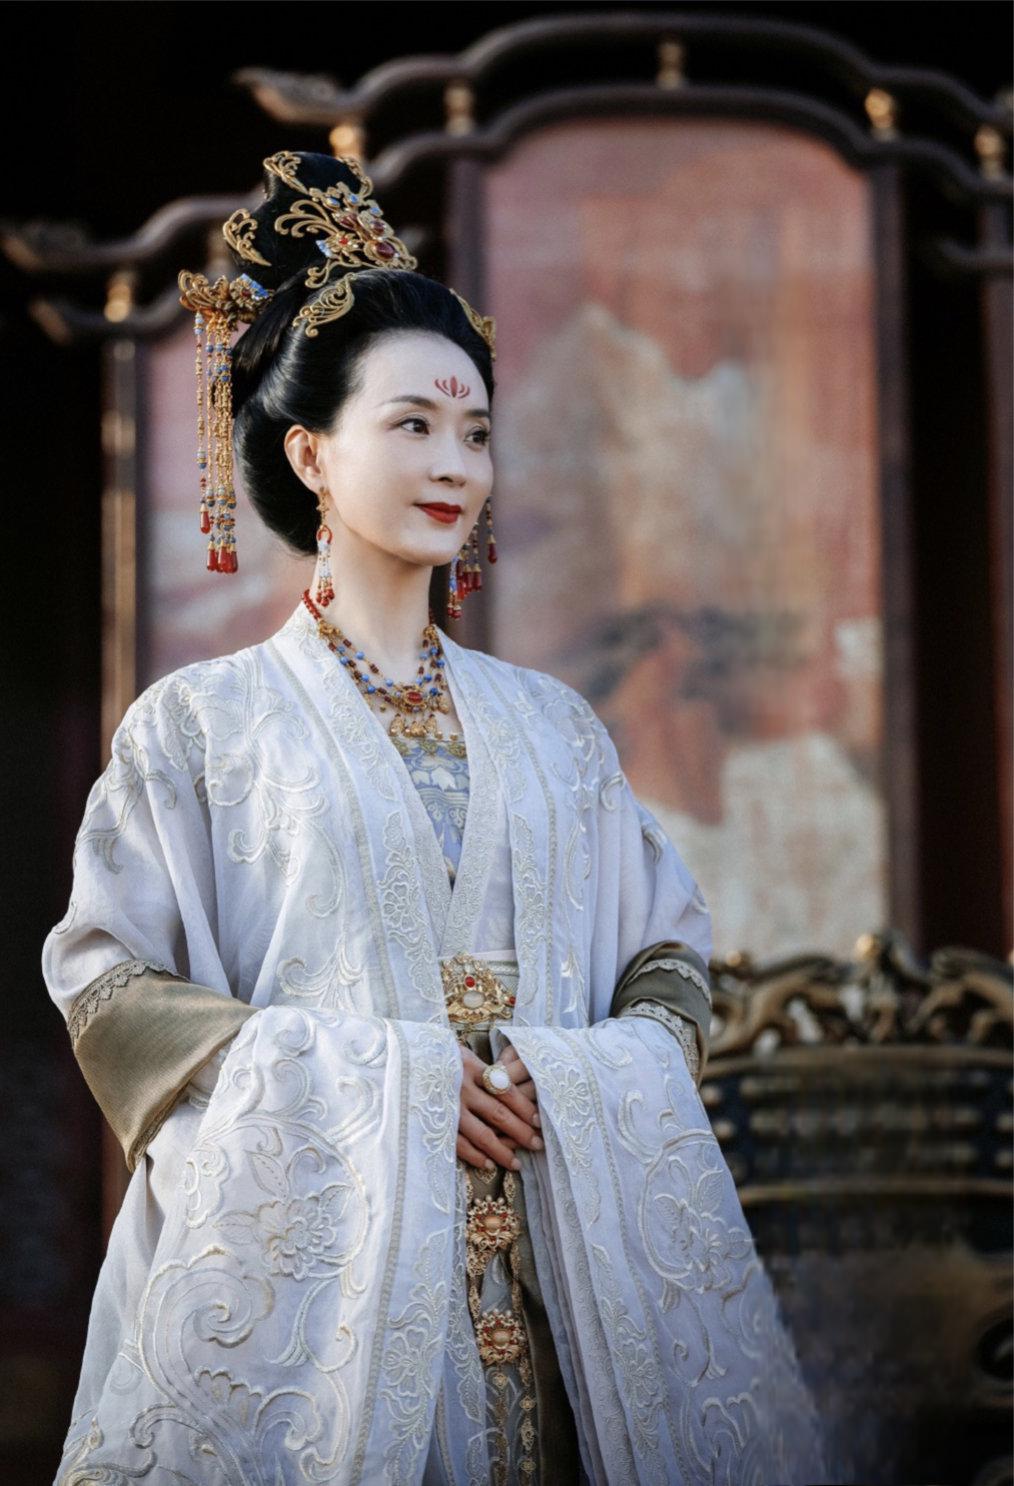 备受瞩目的古装剧集《一念关山》发布定档预告,王艳饰演的昭节皇后